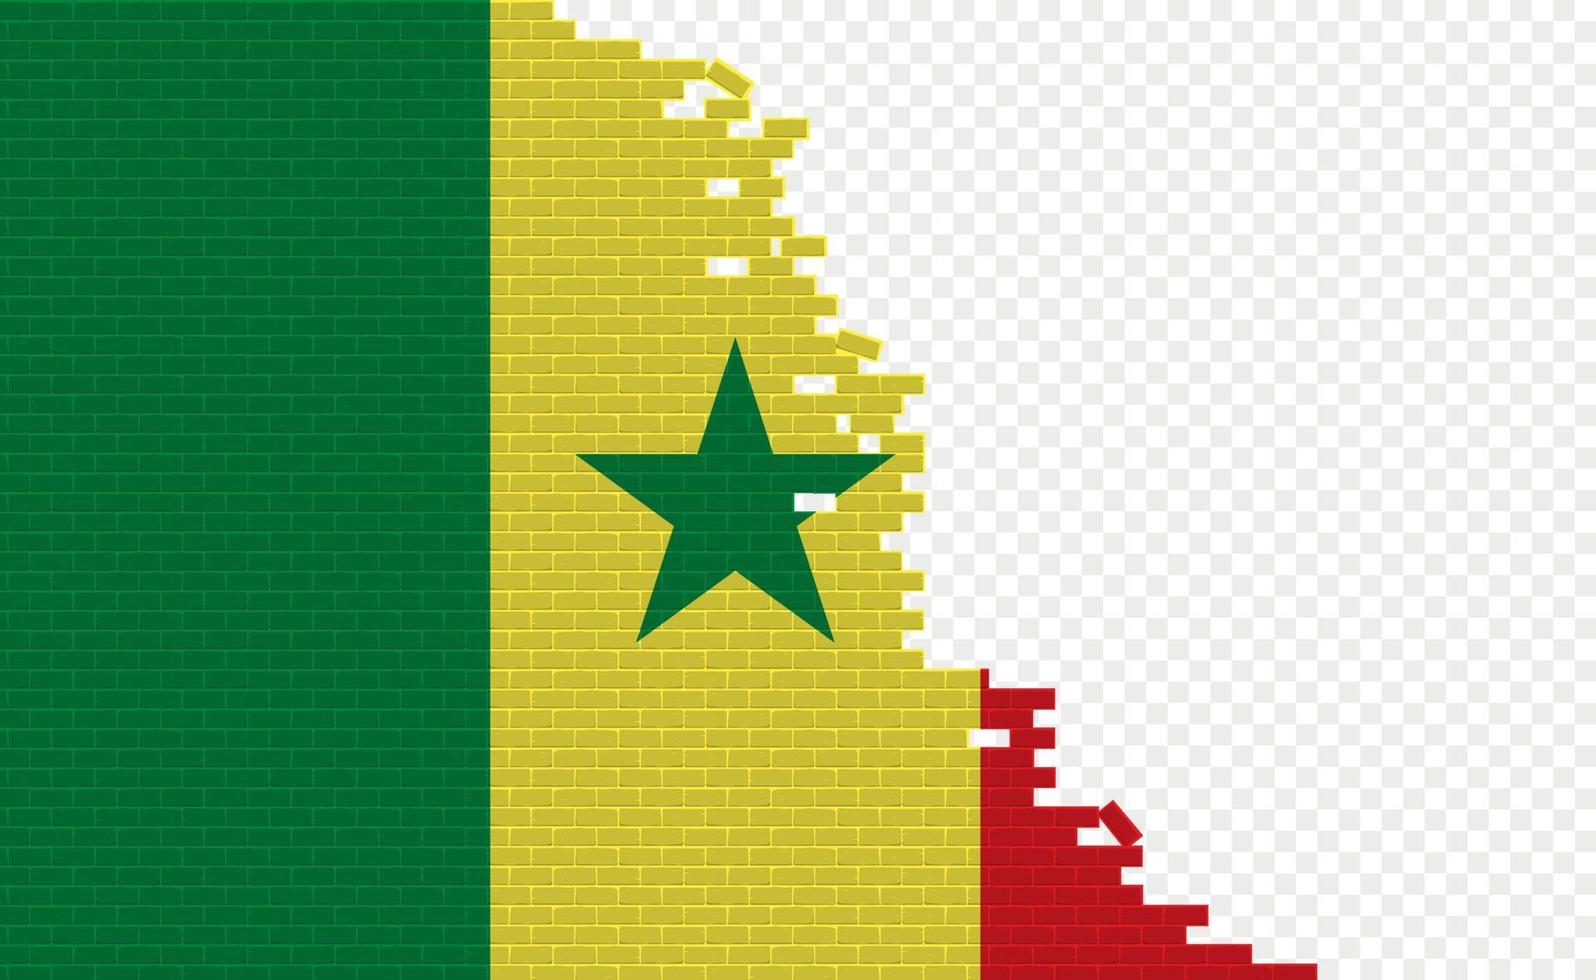 Senegal vlag Aan gebroken steen muur. leeg vlag veld- van een ander land. land vergelijking. gemakkelijk bewerken en vector in groepen.